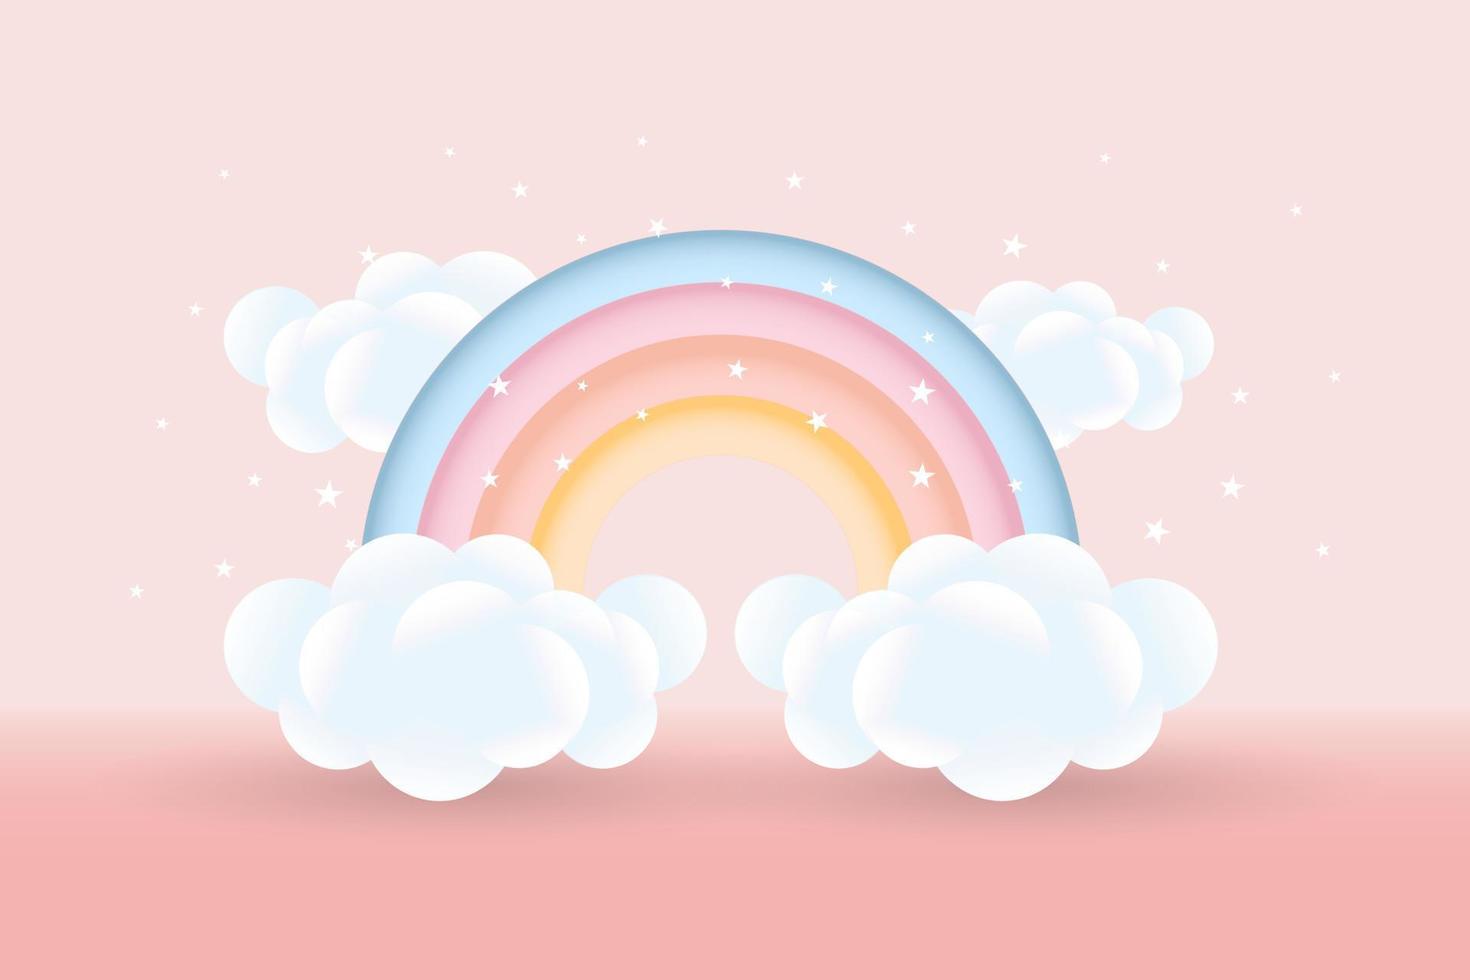 3d bebis dusch, regnbåge med moln och stjärnor på en rosa bakgrund, barnslig design i pastell färger. bakgrund, illustration, vektor